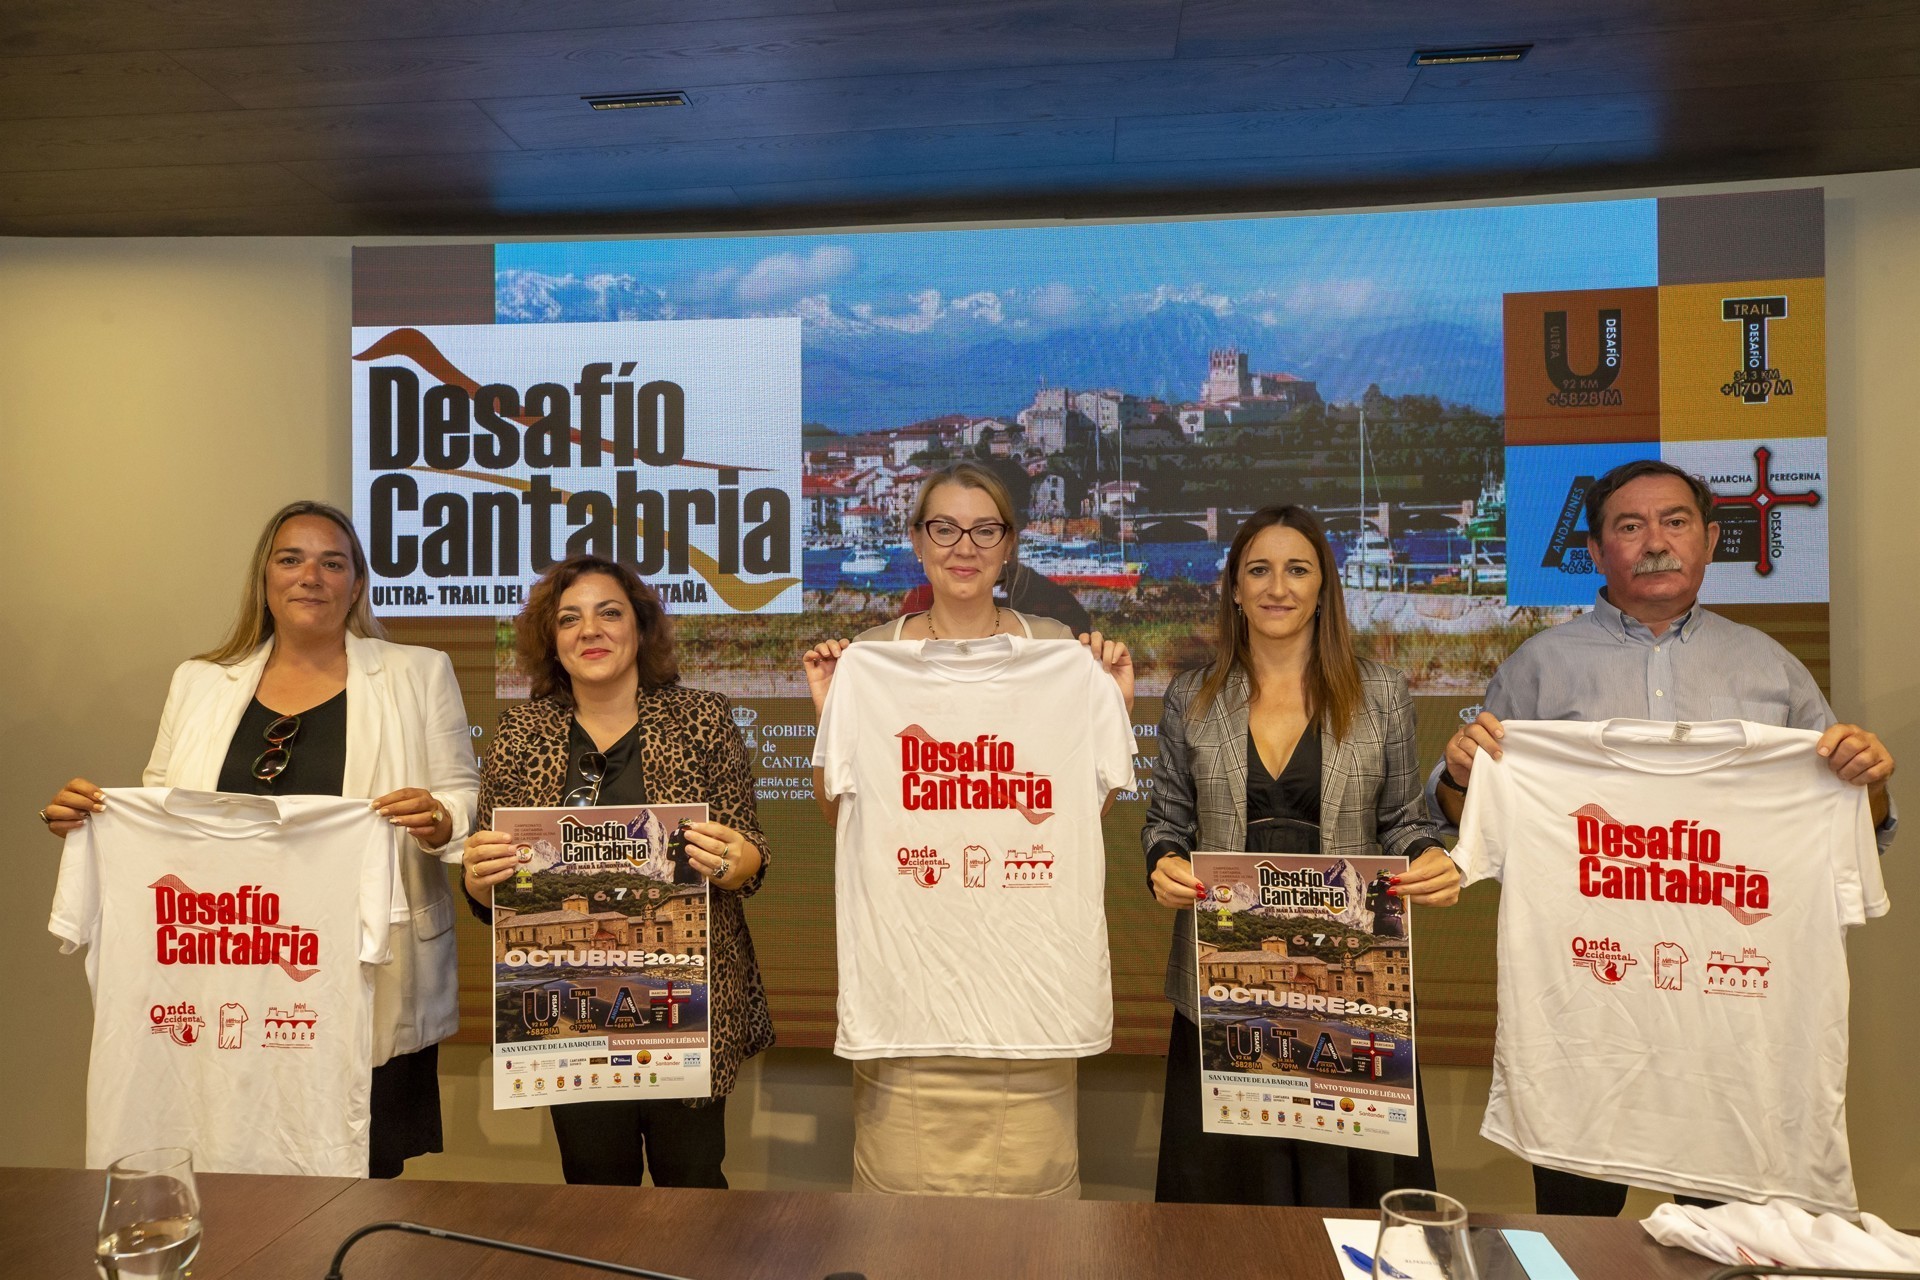 El ultra trail Desafío Cantabria se celebrará este fin de semana con meta en el Monasterio de Santo Toribio